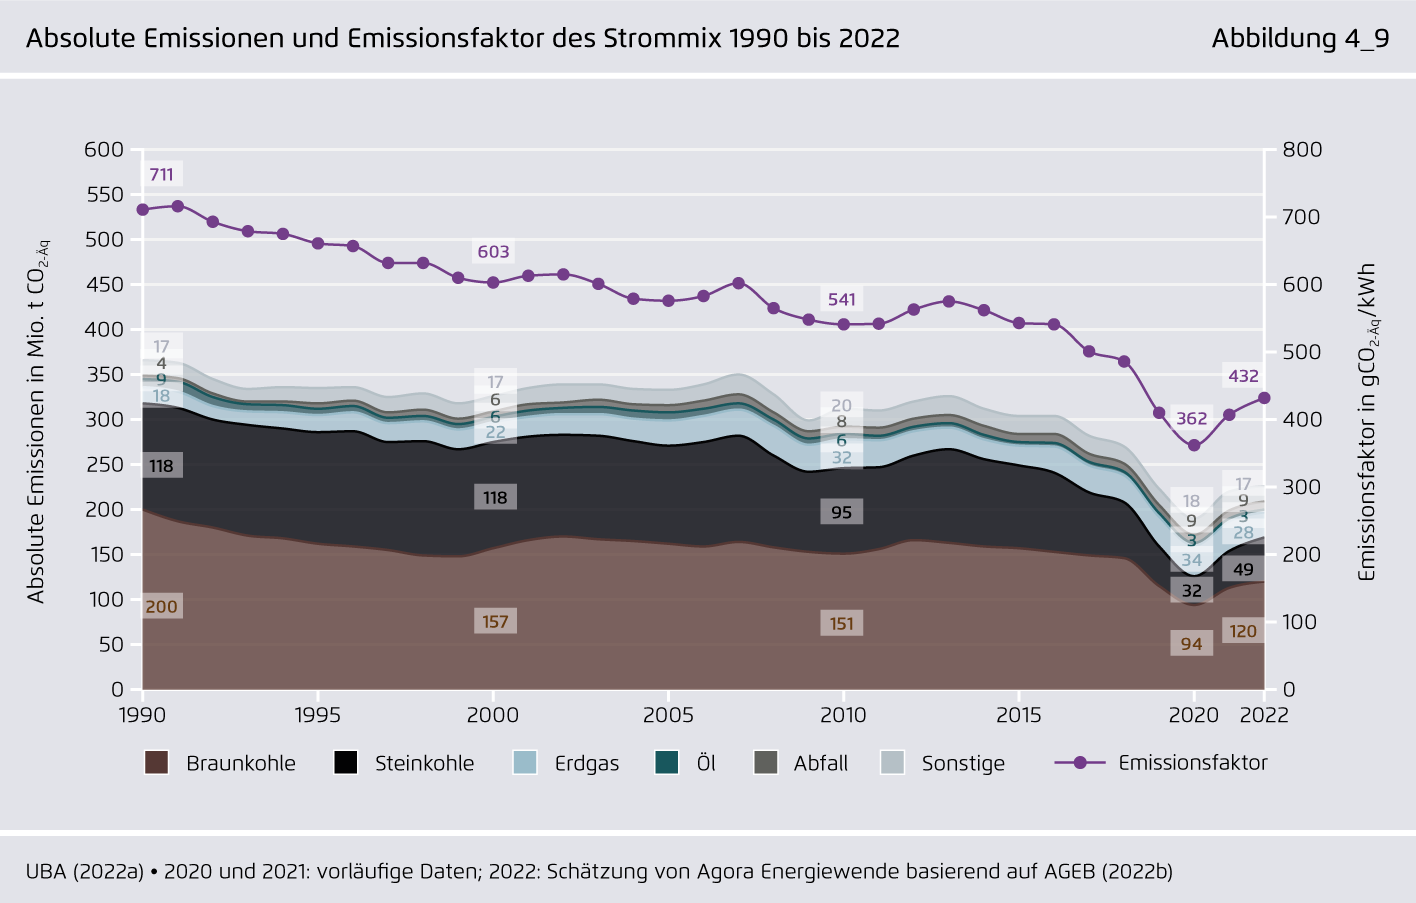 Preview for Absolute Emissionen und Emissionsfaktor des Strommix 1990 bis 2022